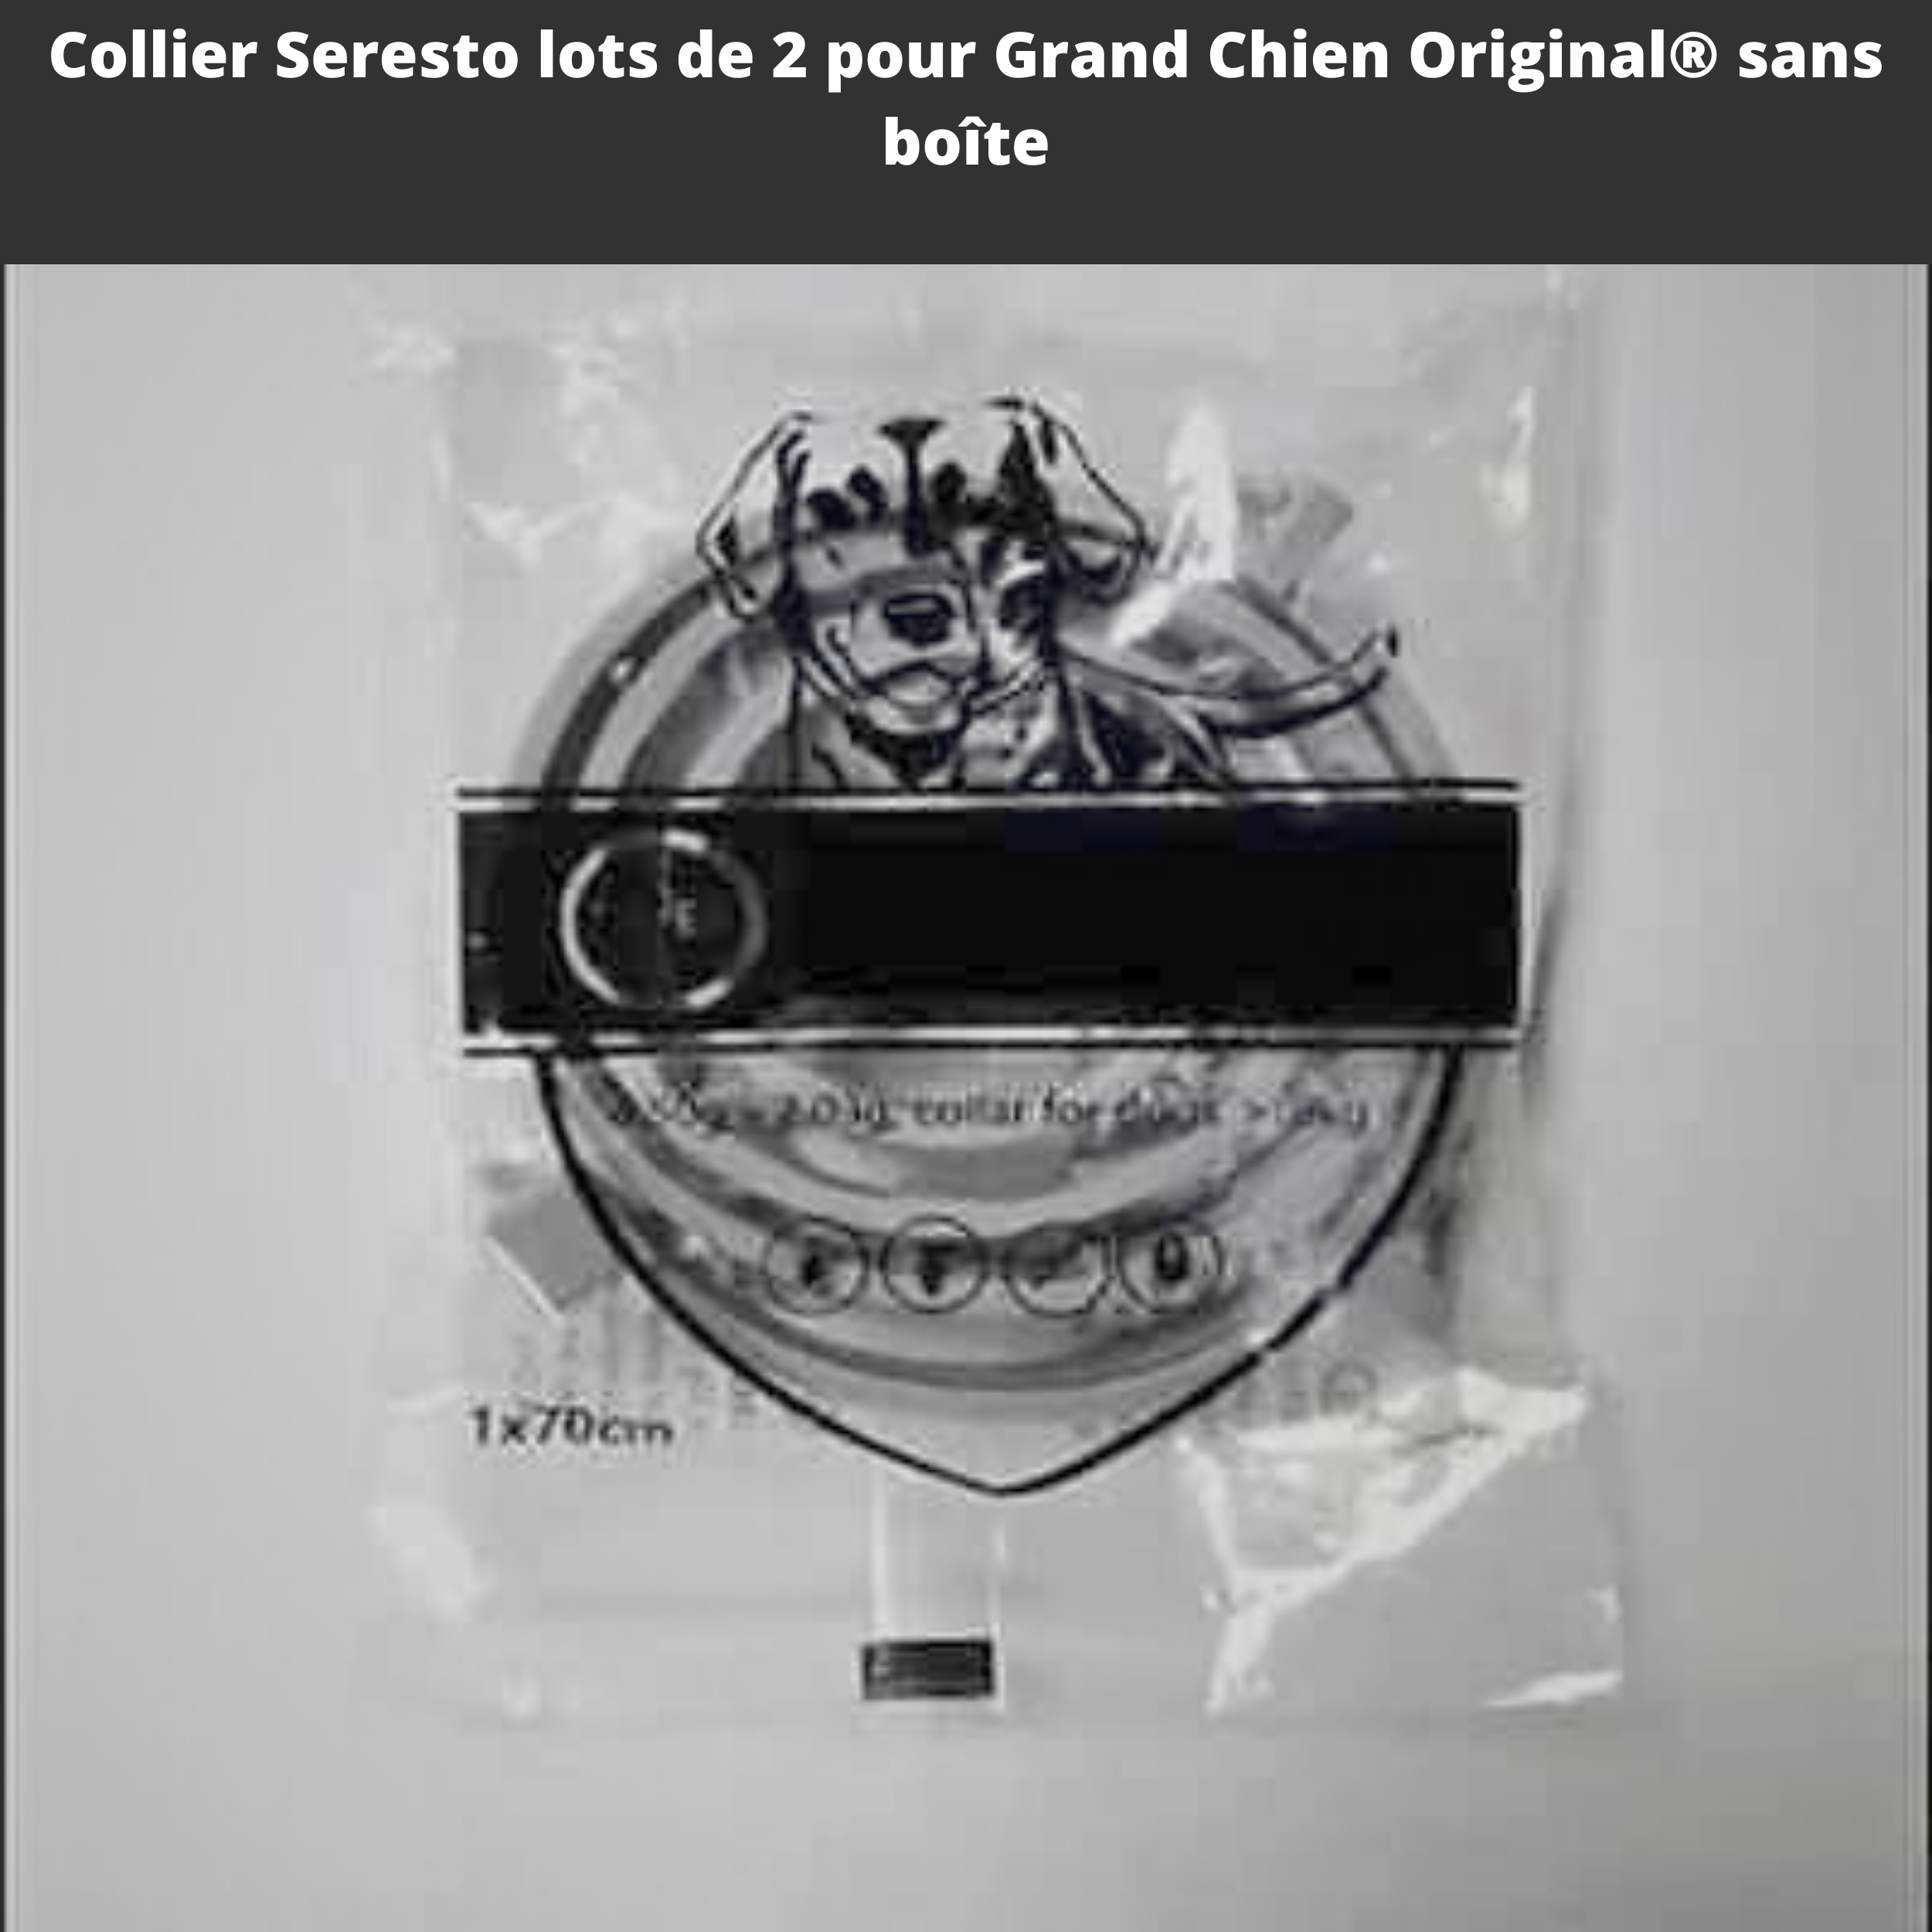 Collier Seresto Antiparasitaire Anti-Puces Et Anti-Tiques pour Grand Chien +8Kg Original® sans boîte